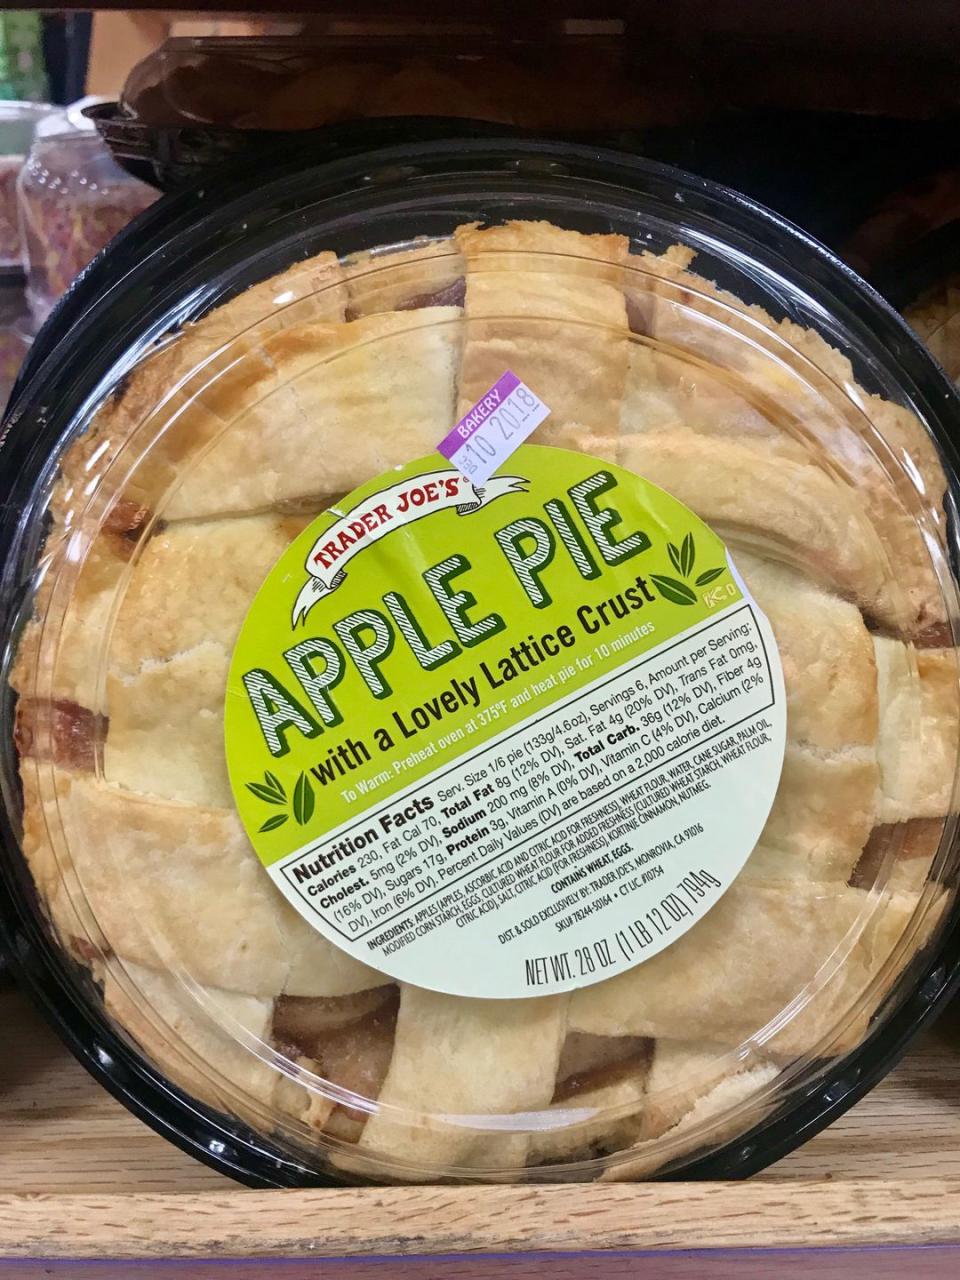 4) Apple Pie